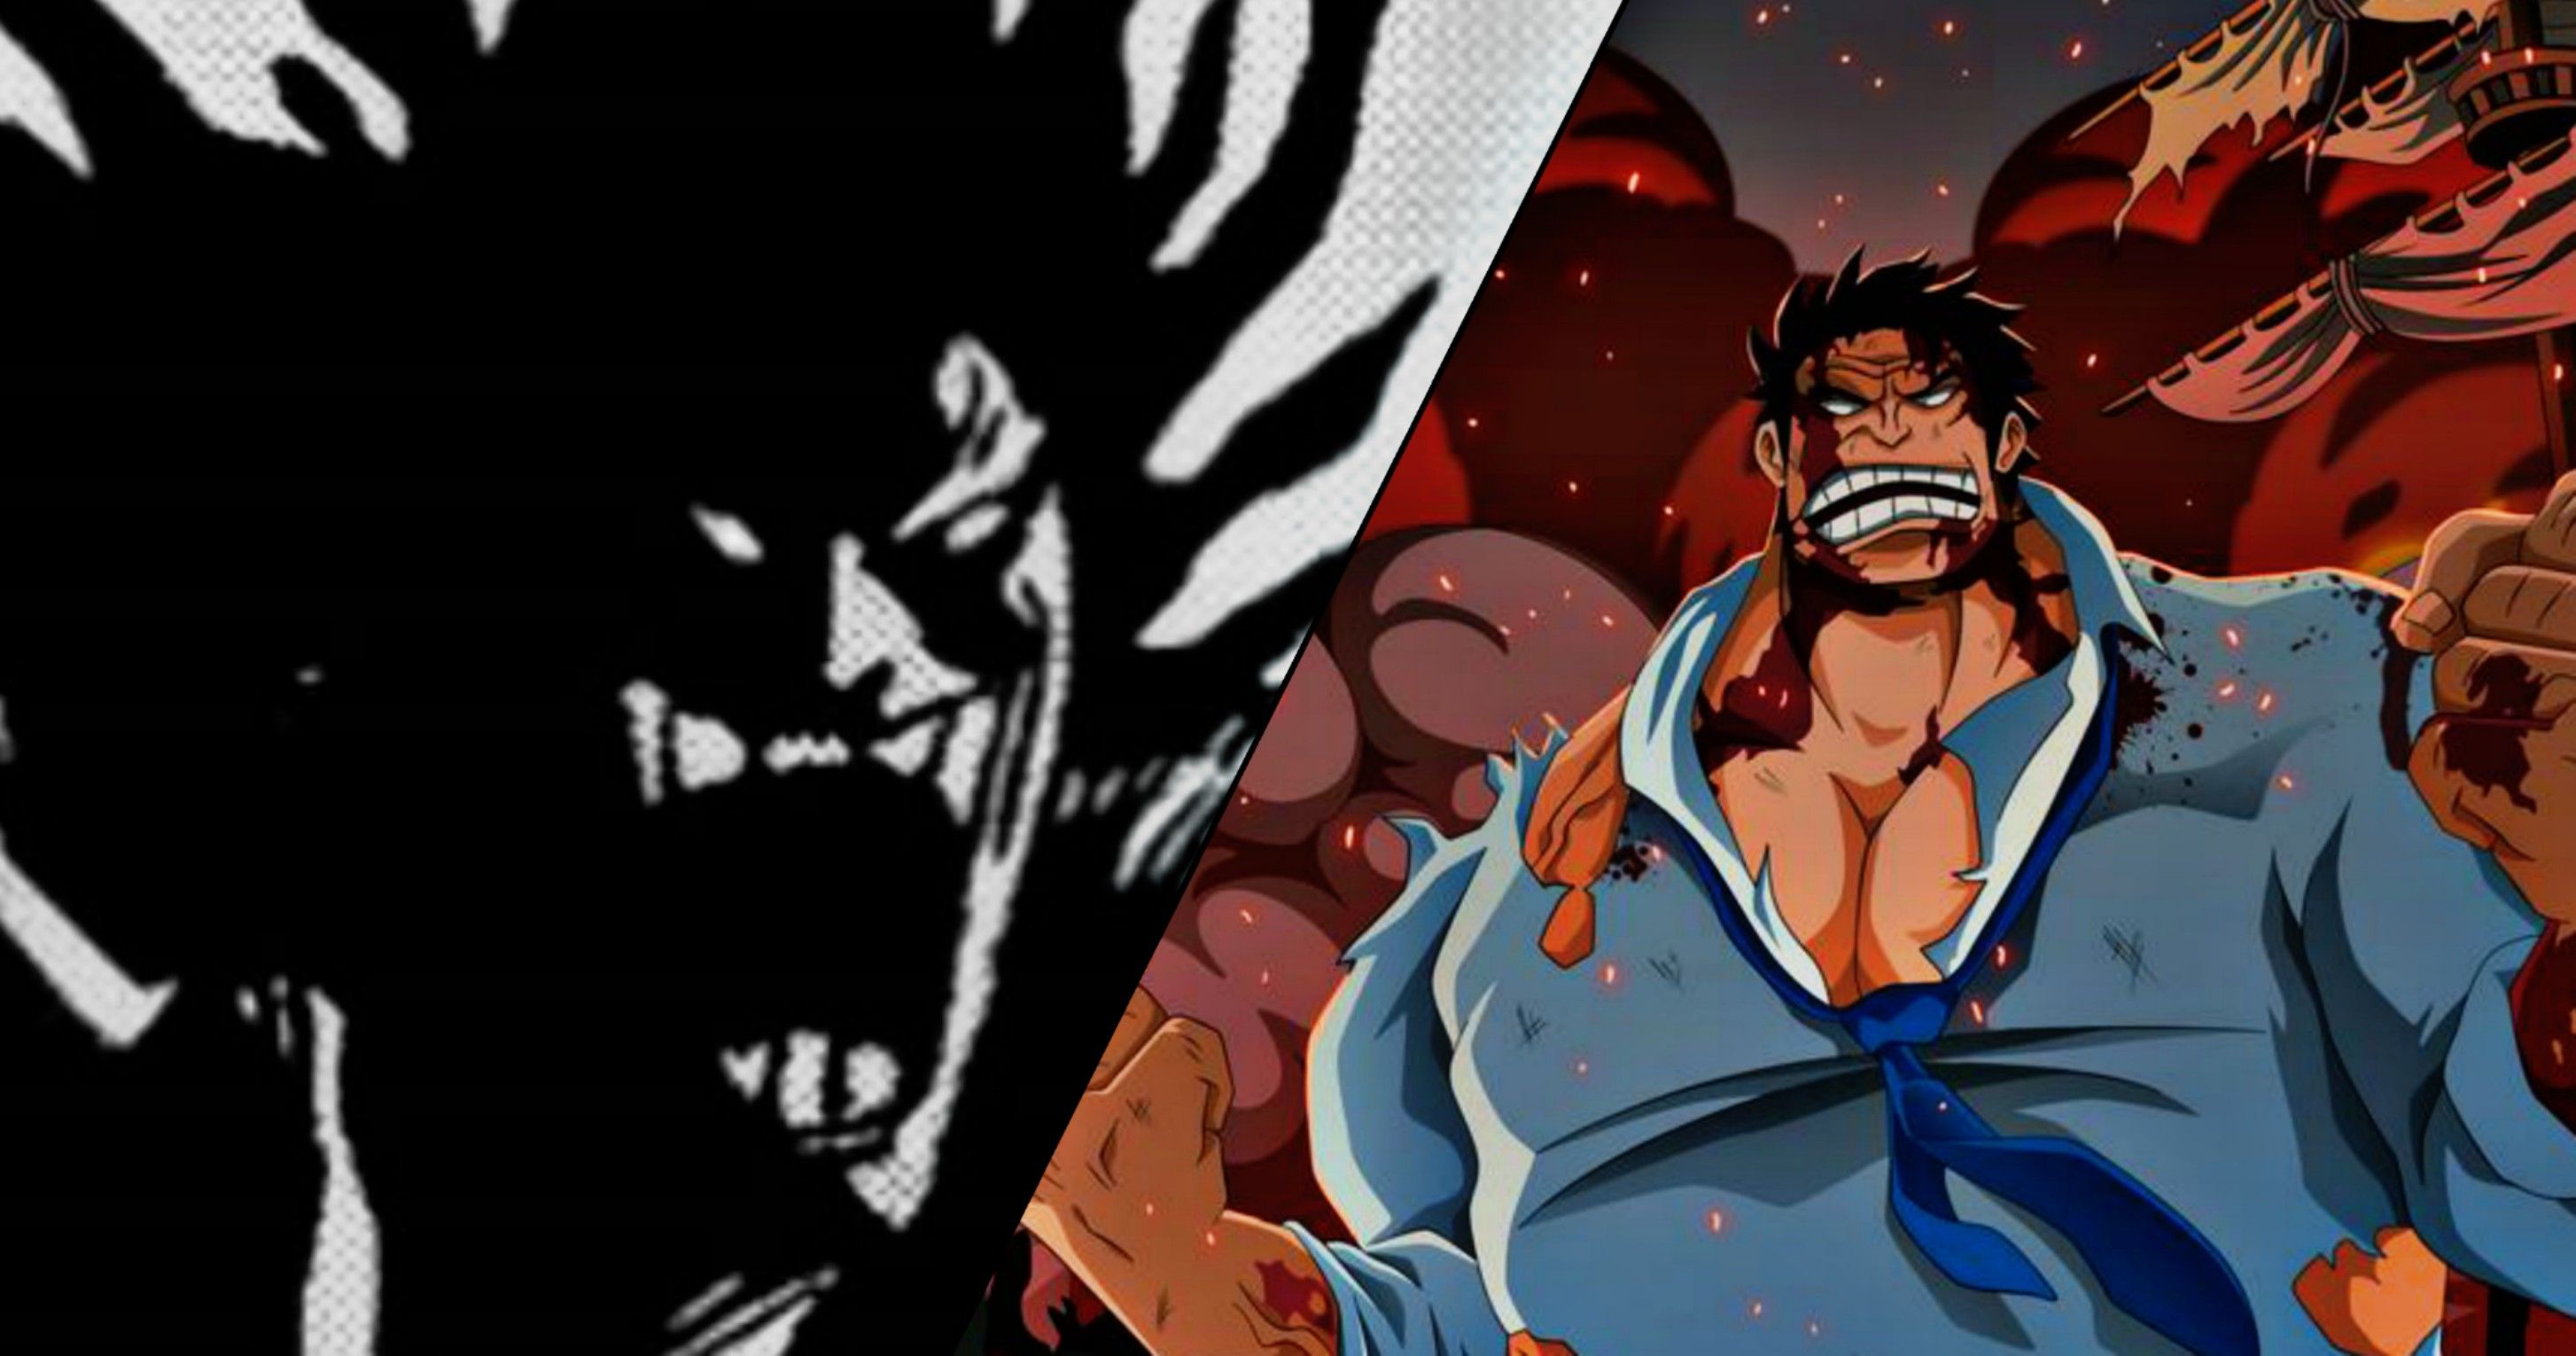 Luffy Gear 5 vs Xebec : Rock D. Xebec kneel under Luffy Haki Power